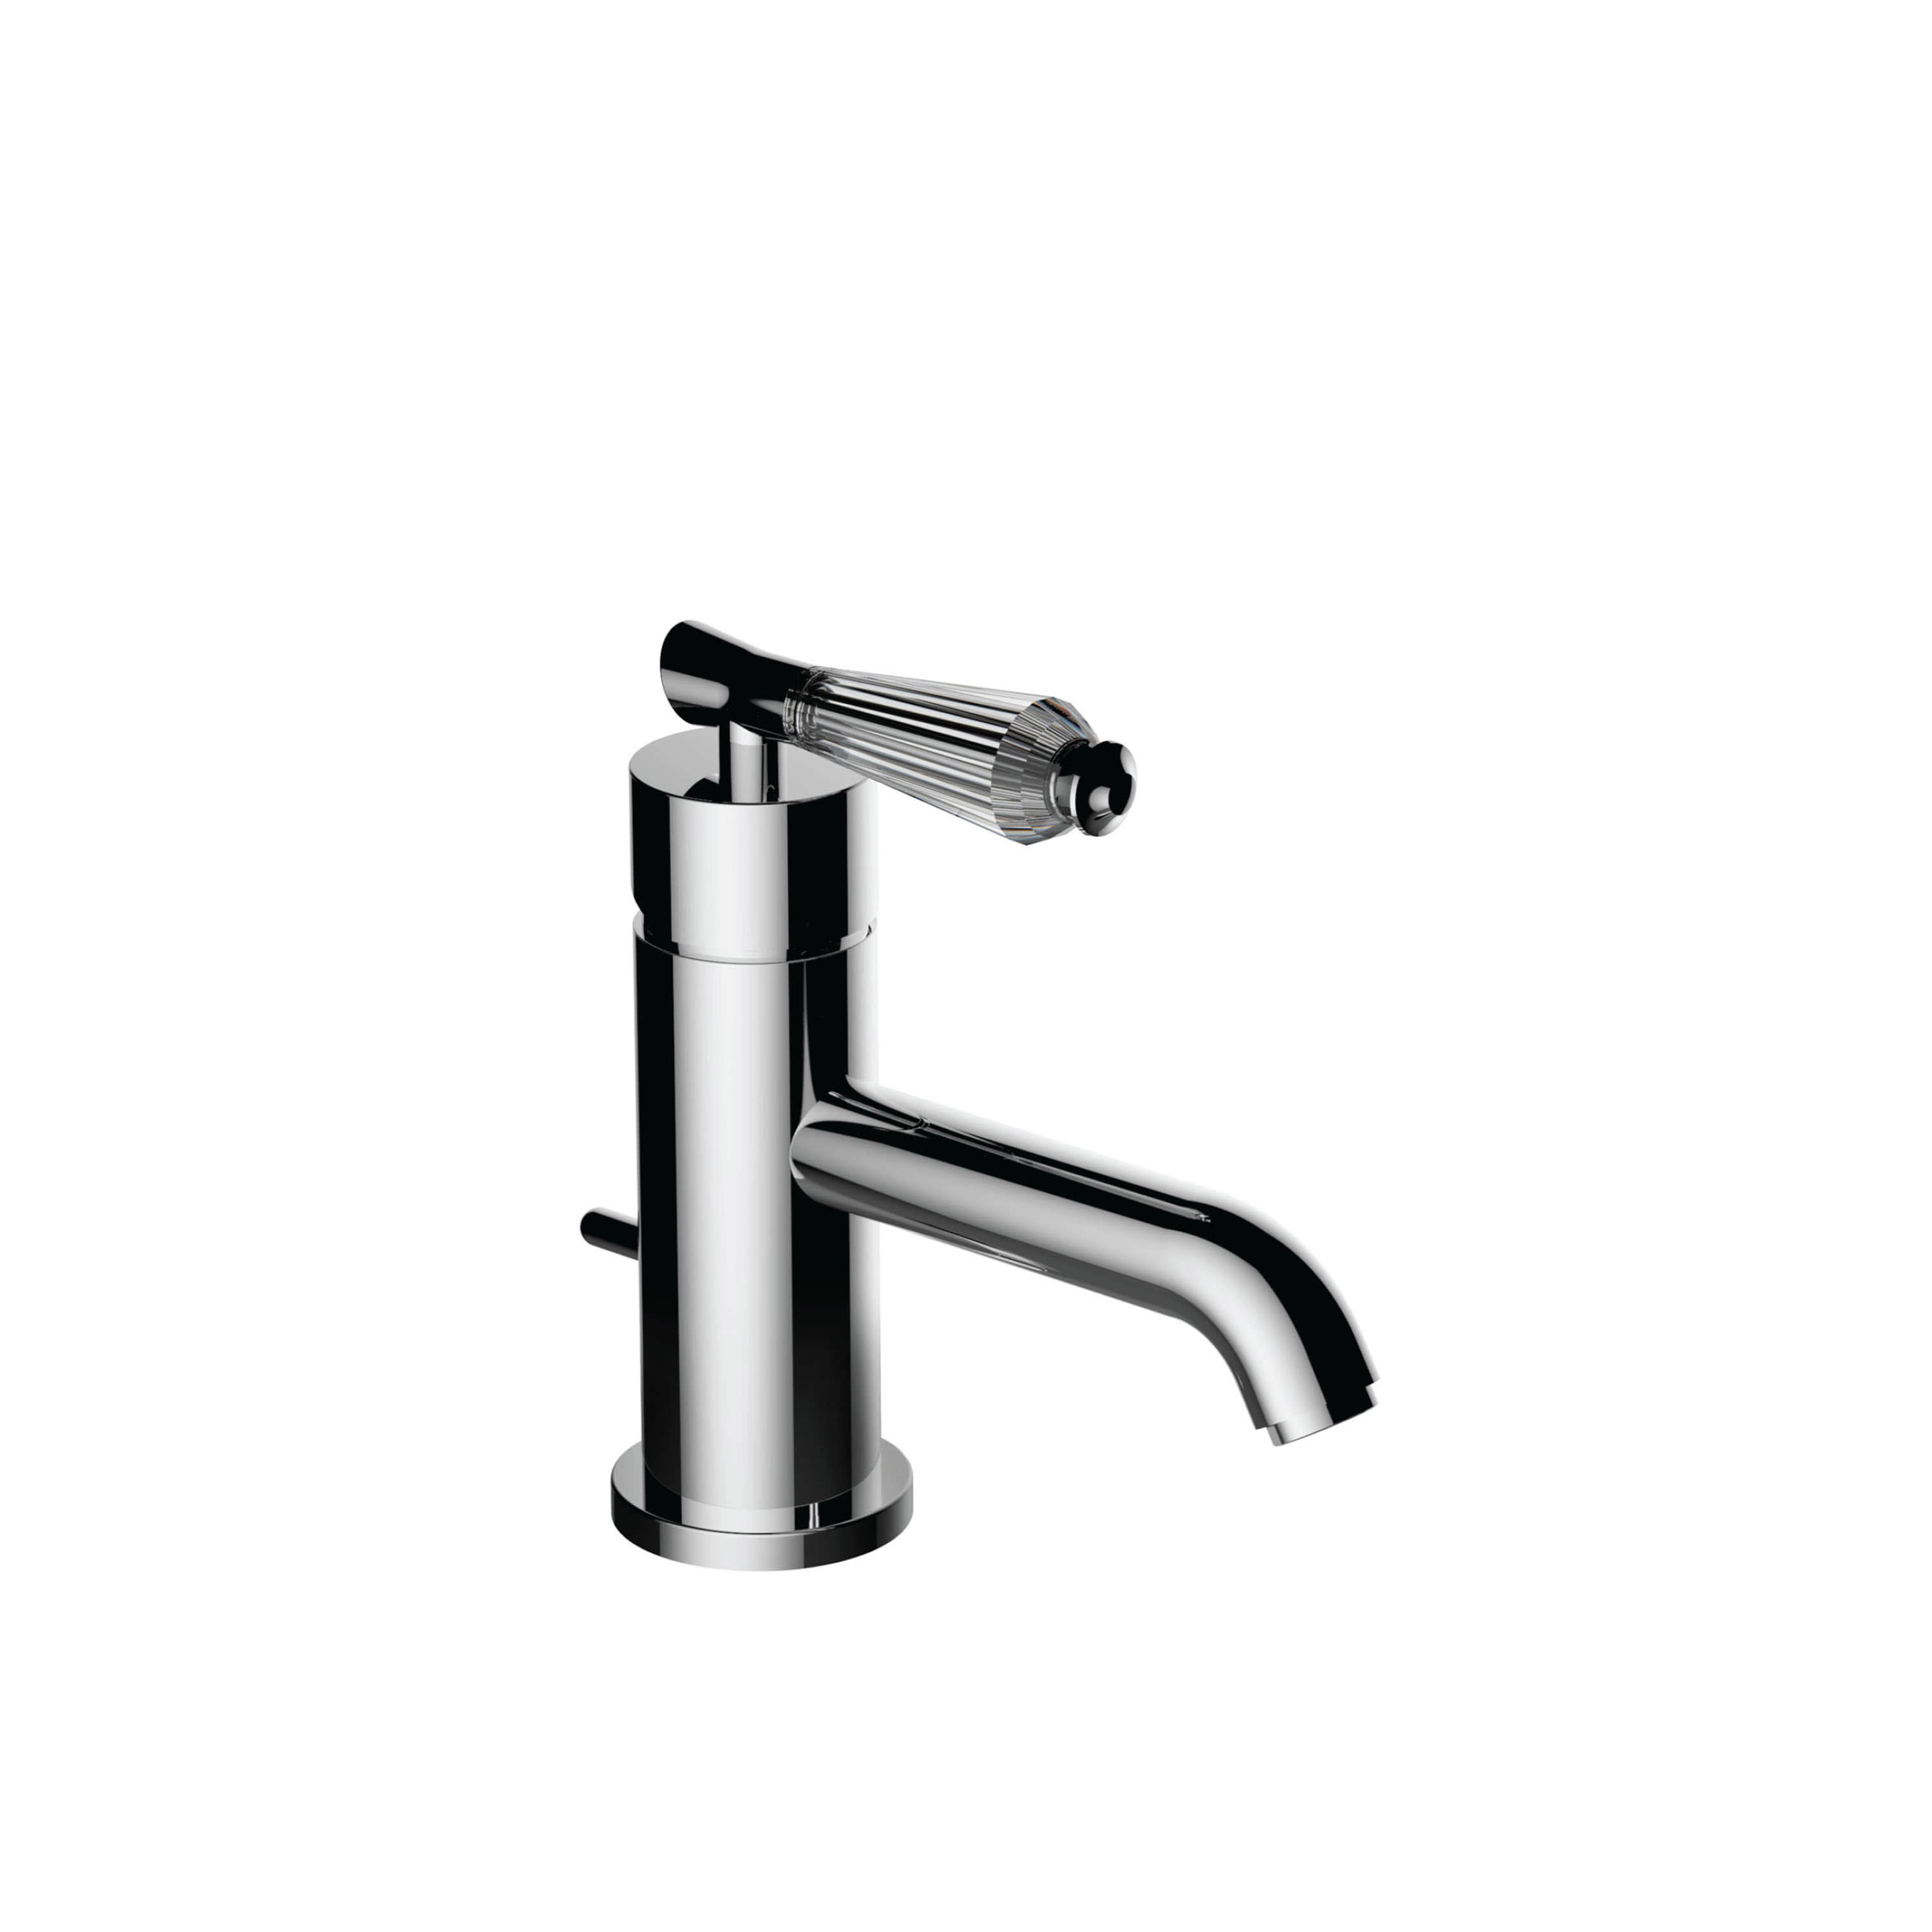 Santec 9480 Moda Crystal Bathroom Faucet Qualitybath Com